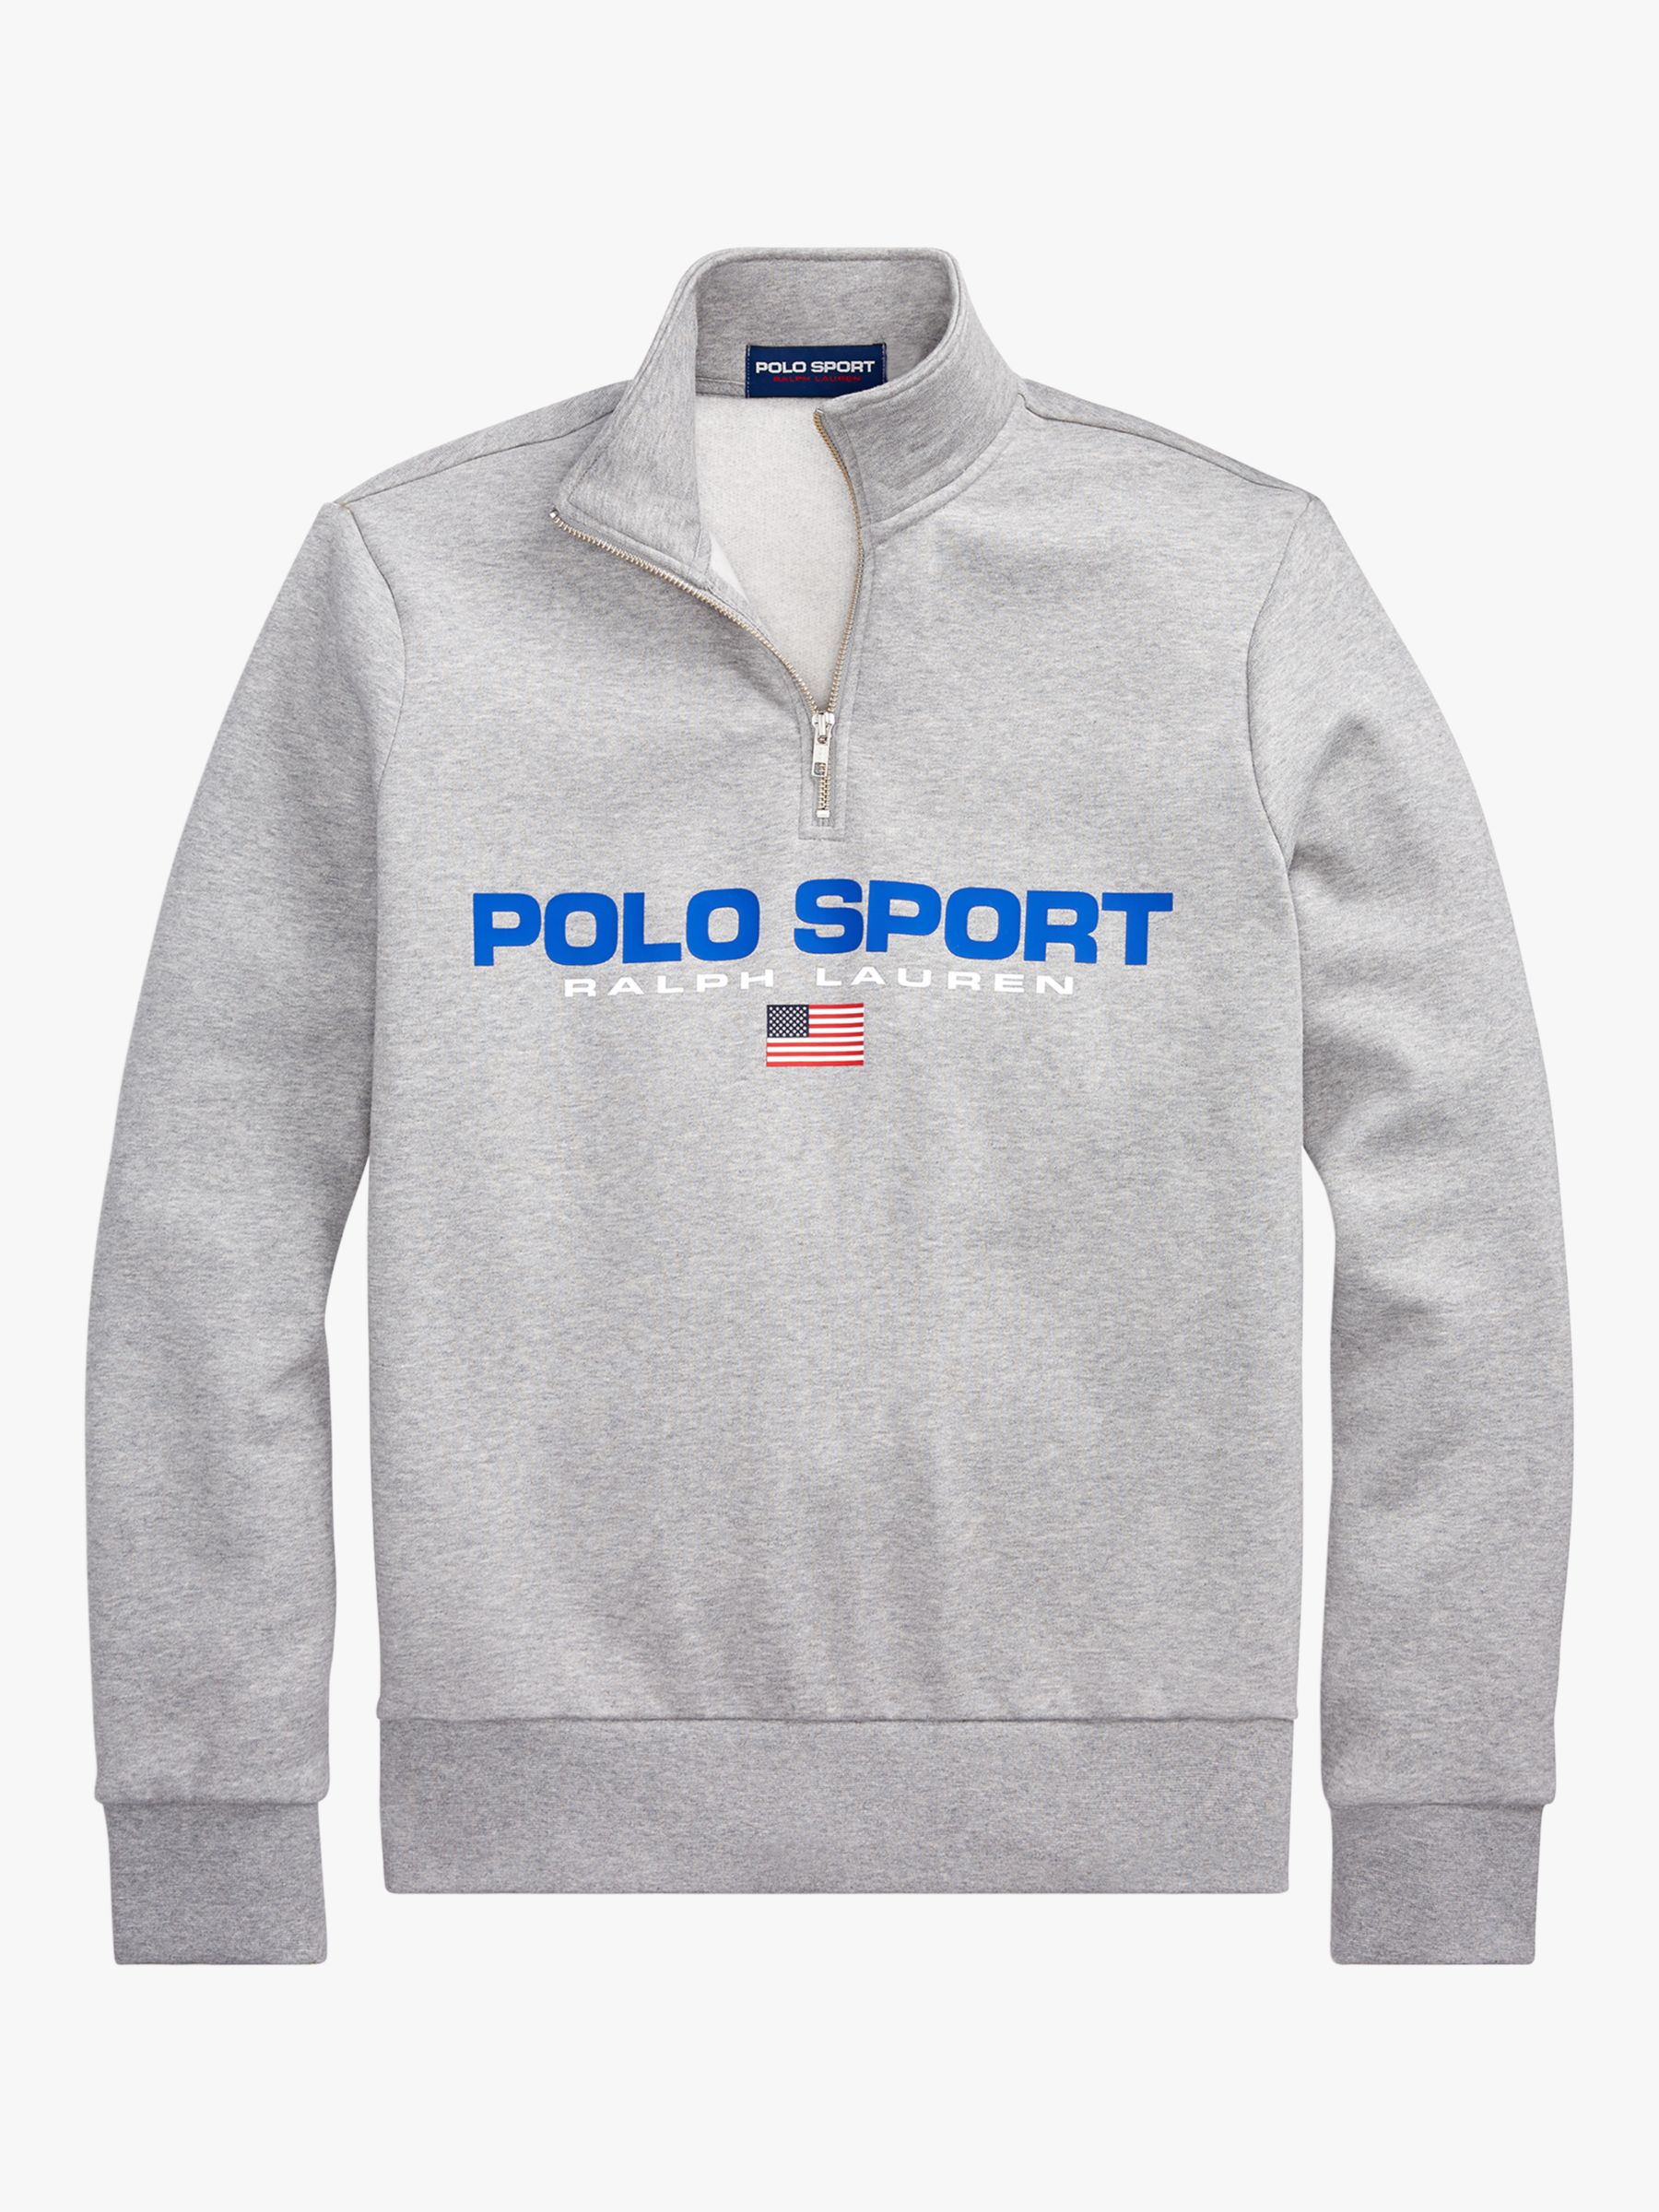 polo sport half zip fleece